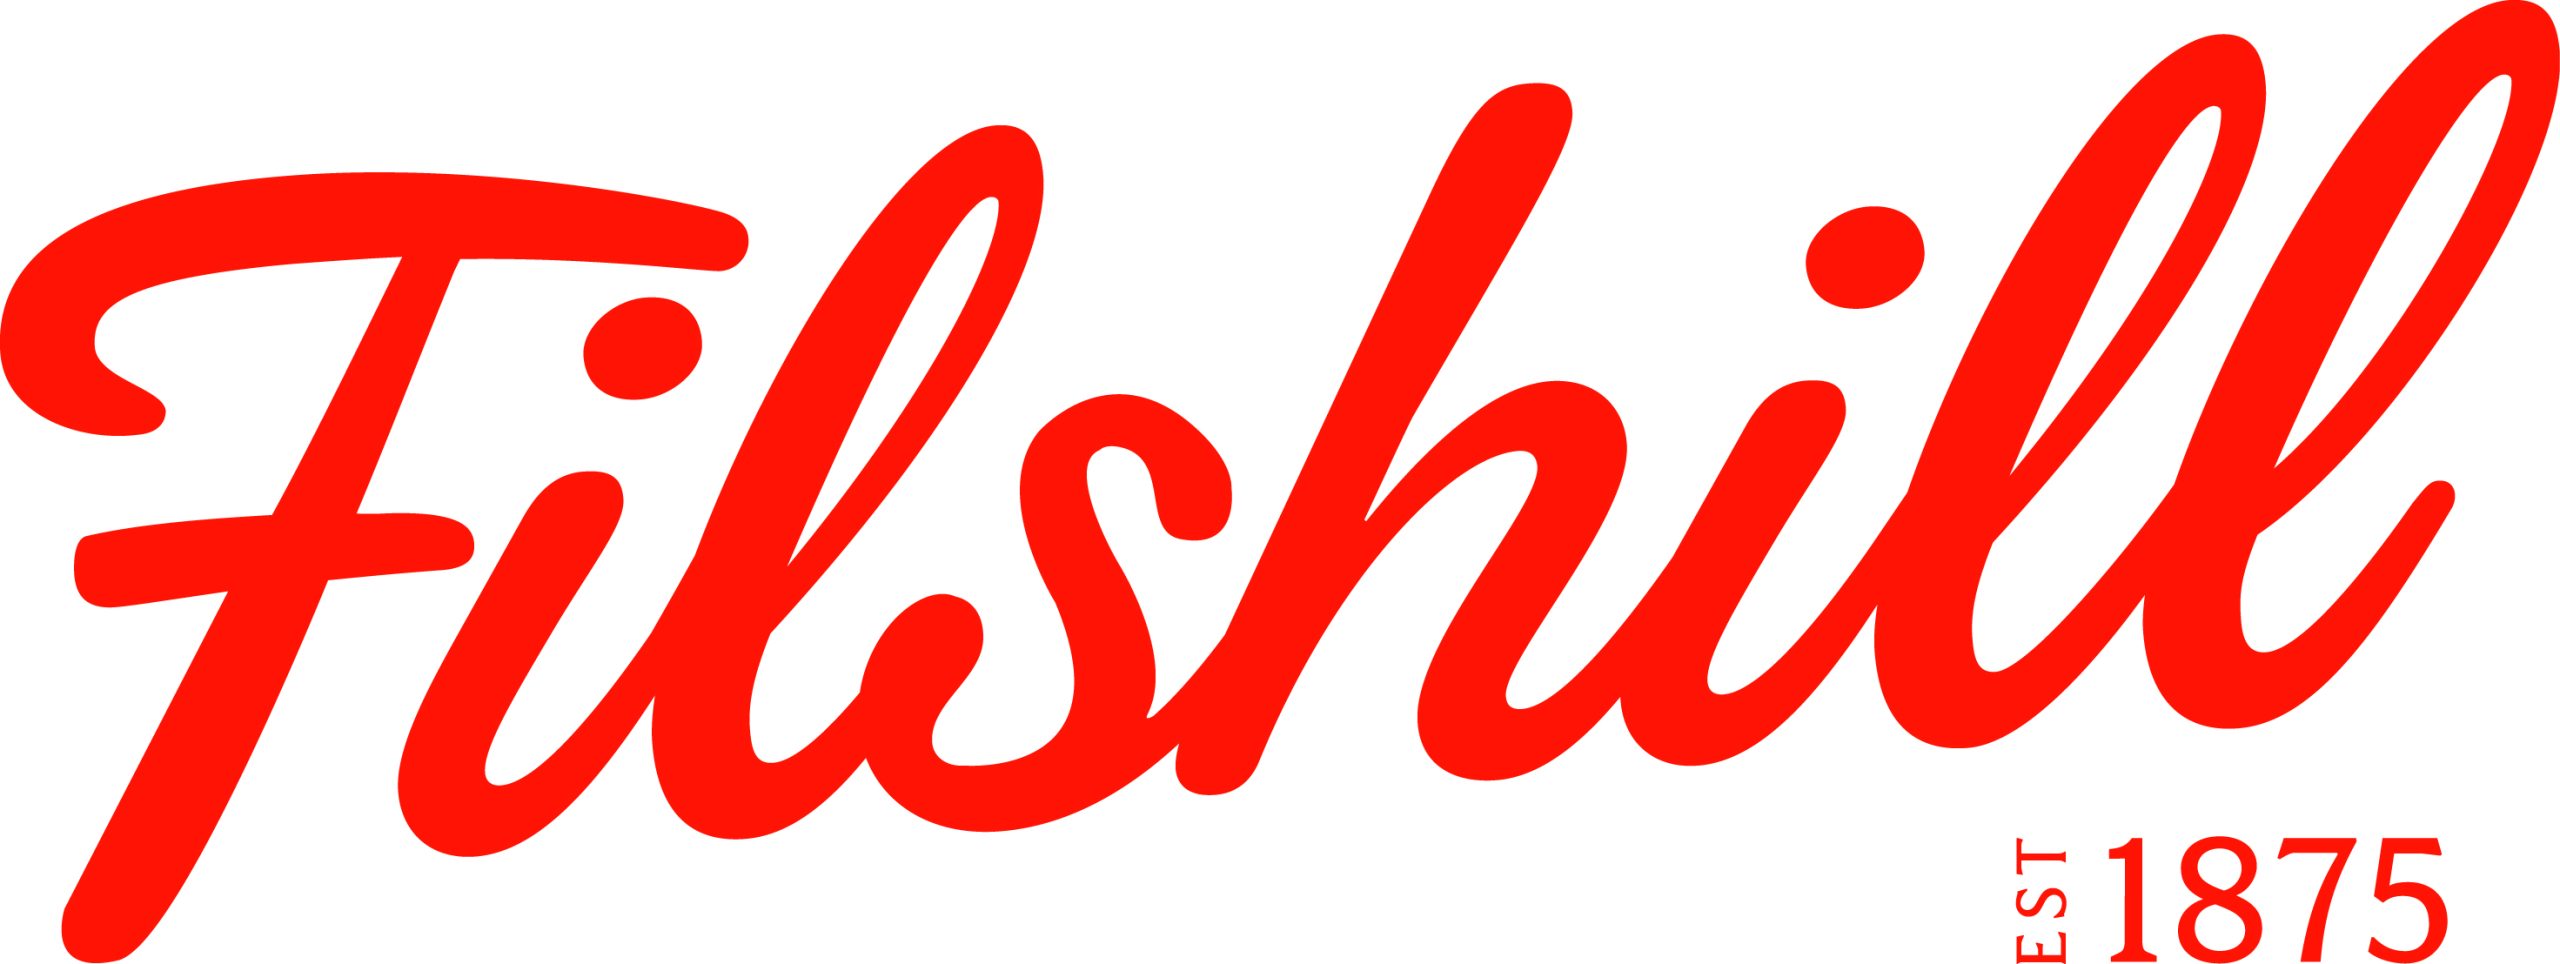 Filshill Logo